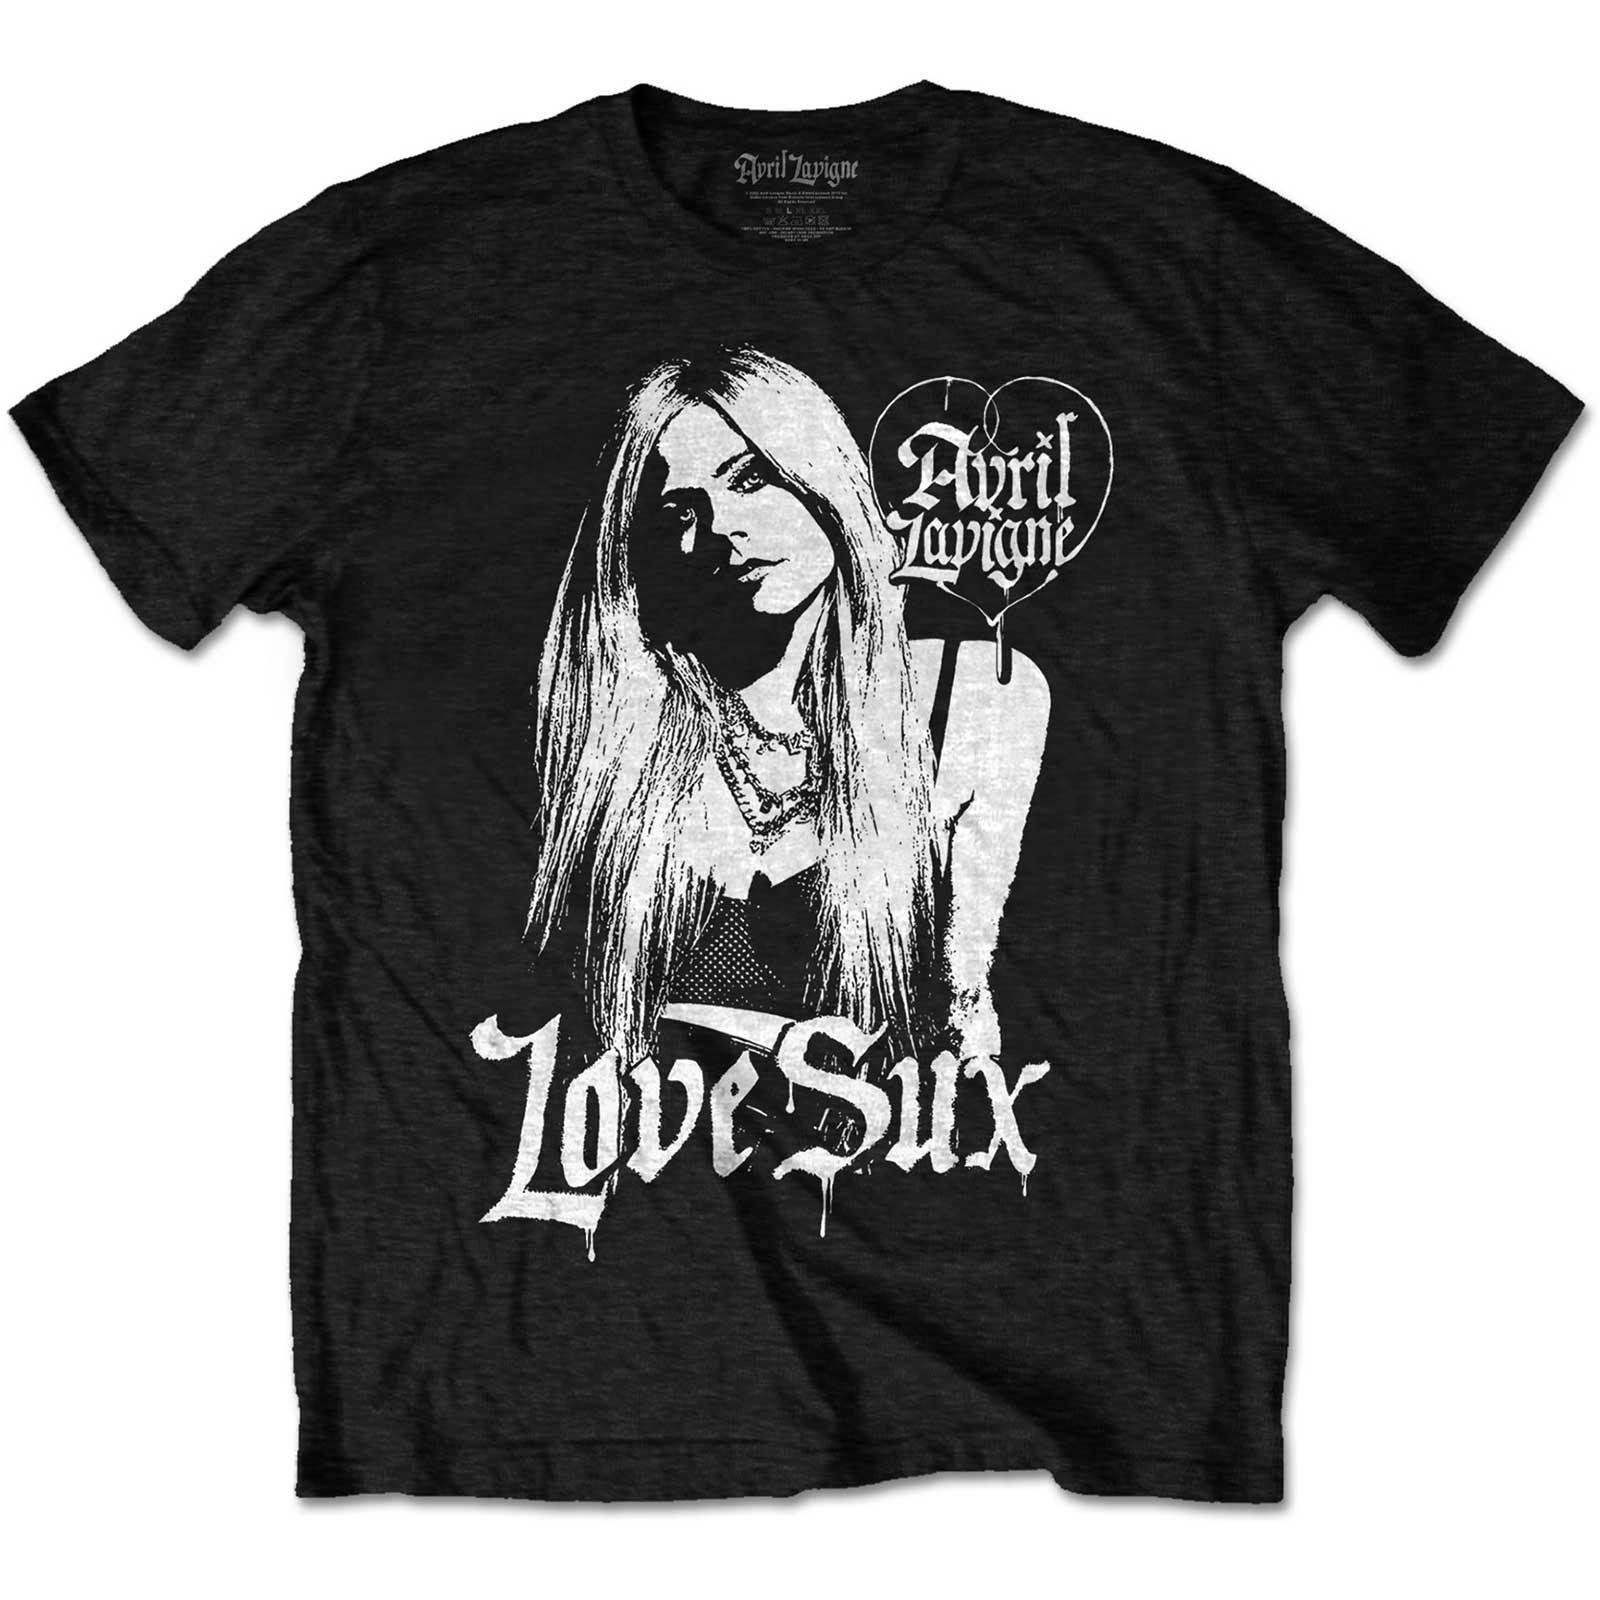 Avril Lavigne Unisex Adult Love Sux Cotton T-Shirt (Black) (XL)